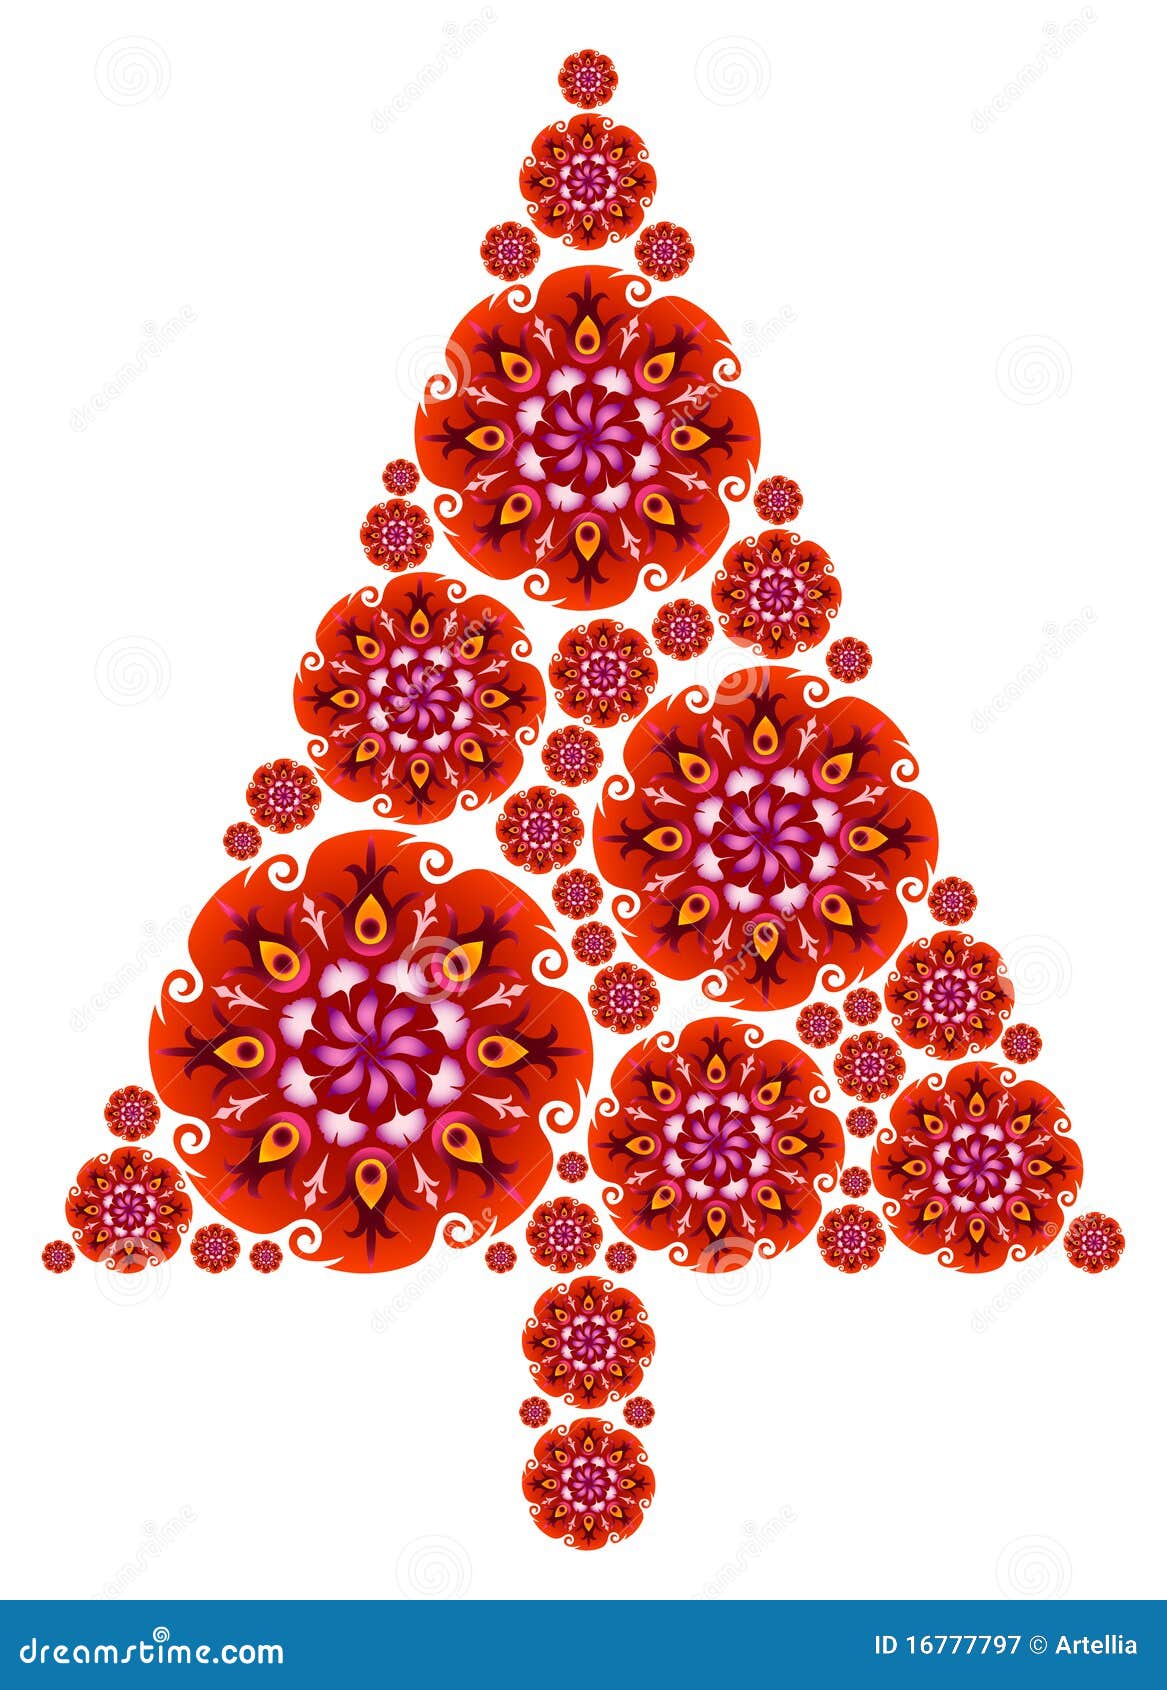 Sophia Art Cortina de Navidad con diseño de árbol de la Vida con Mandala y Cenefa 